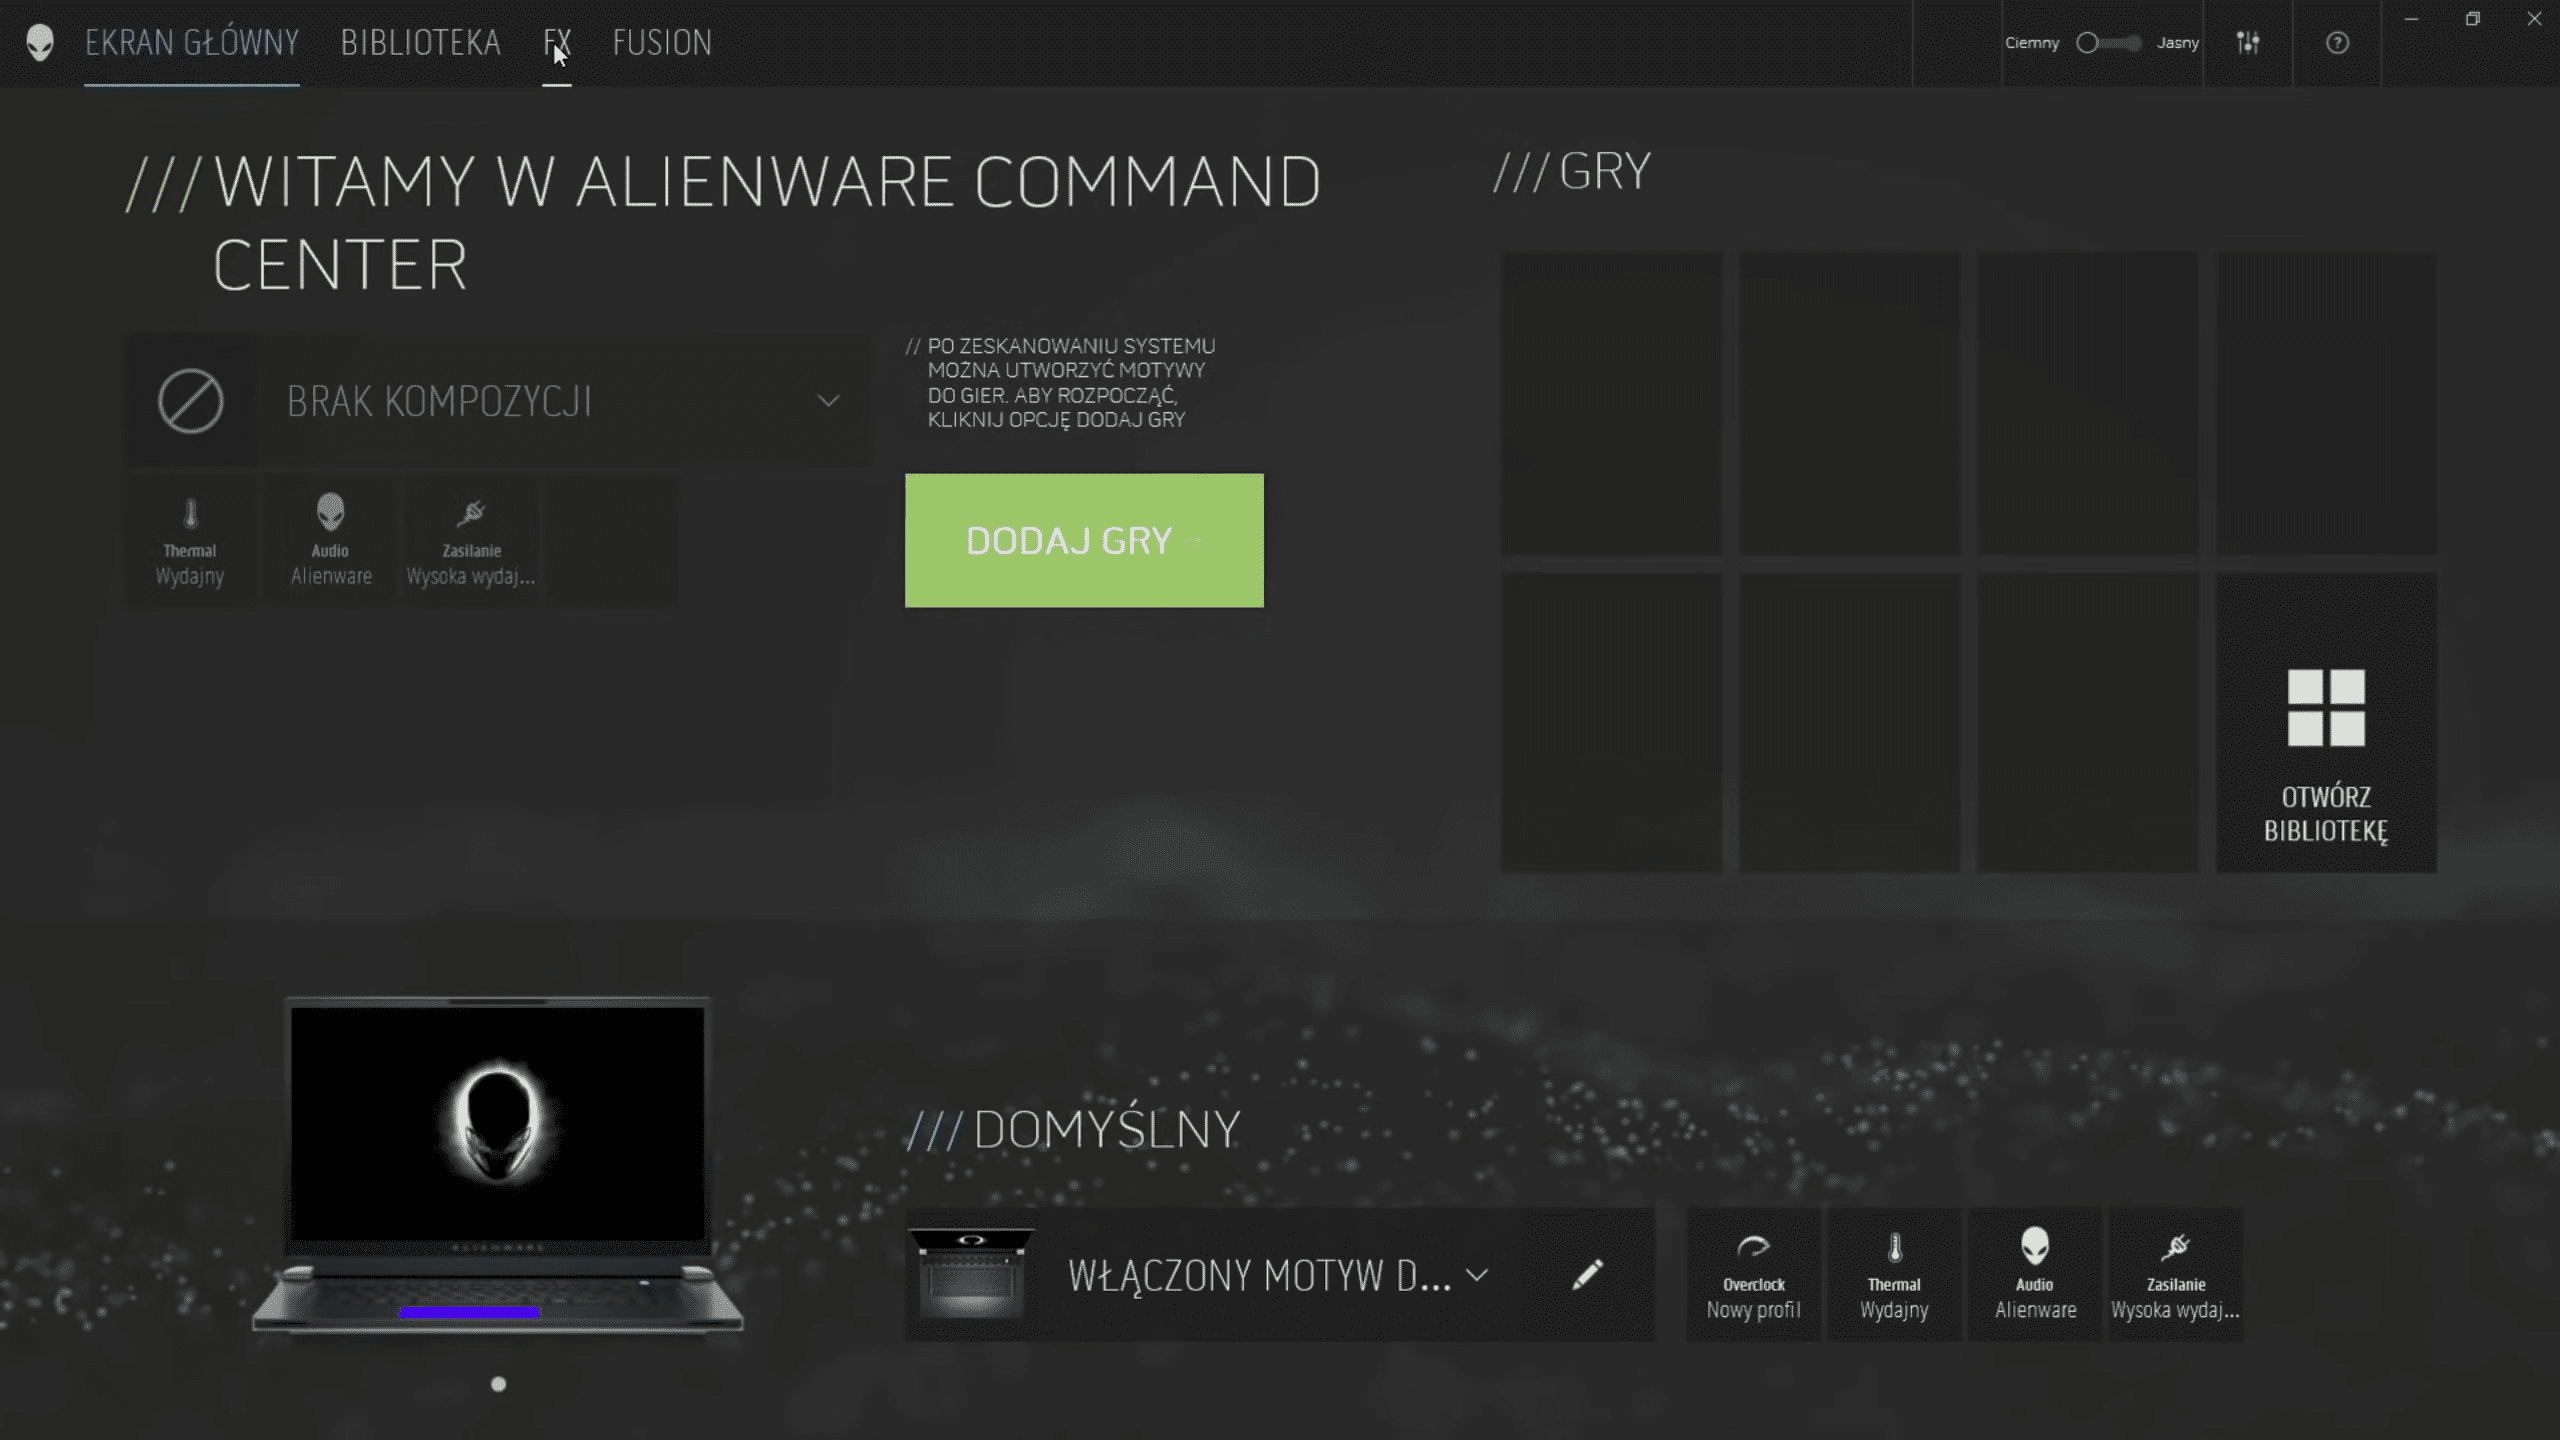 alienware command center ekran główny